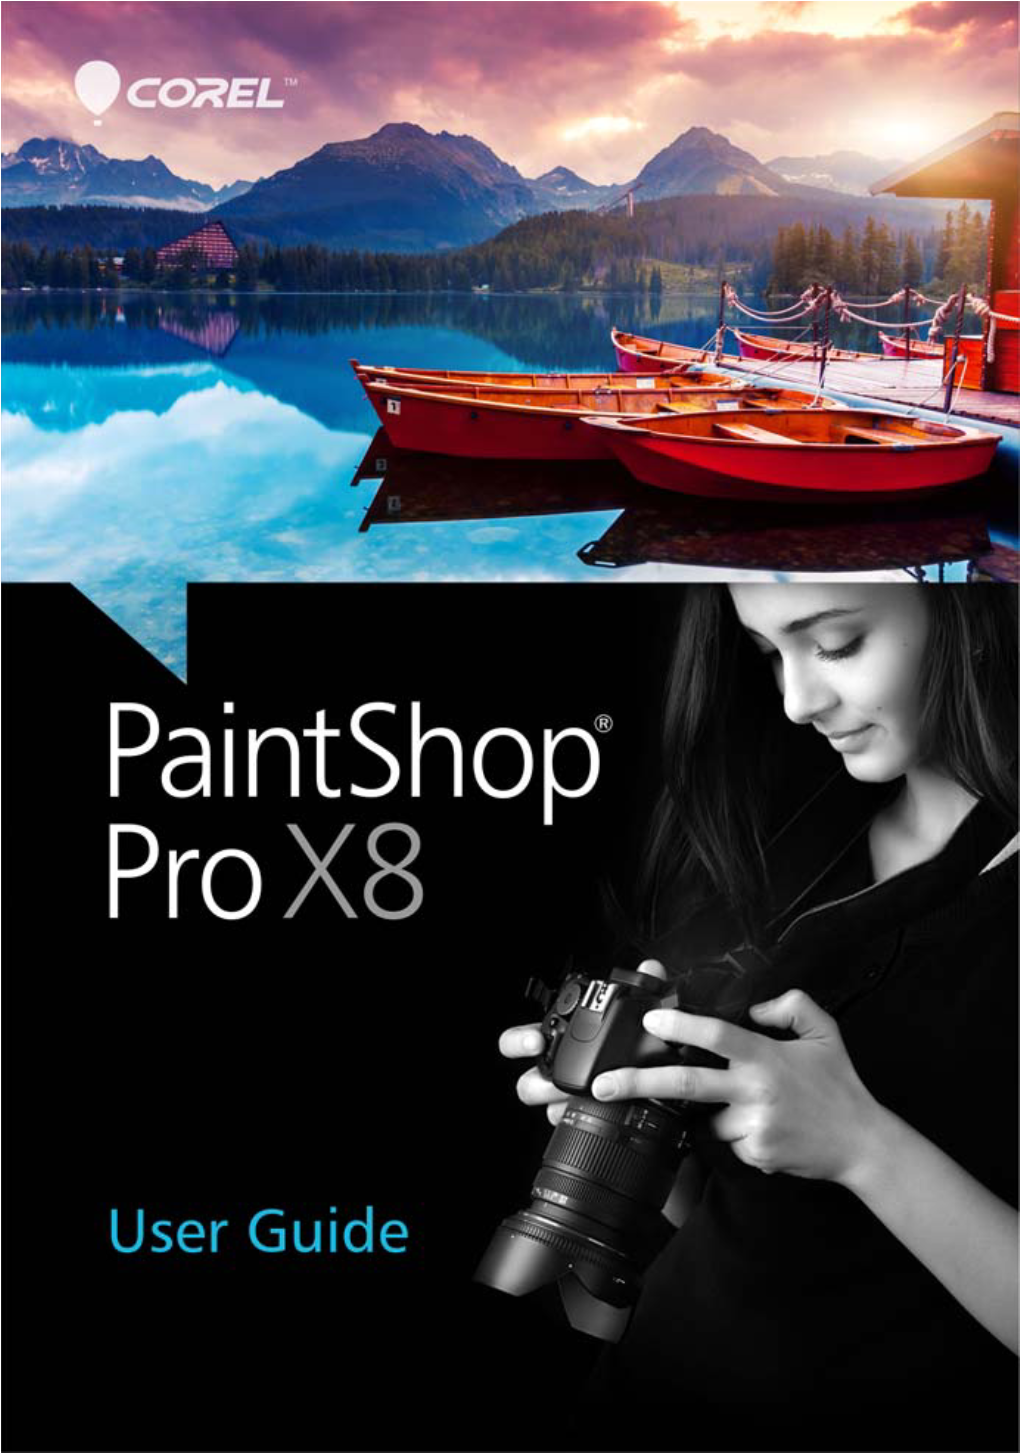 Corel Paintshop Pro X8 User Guide PDF